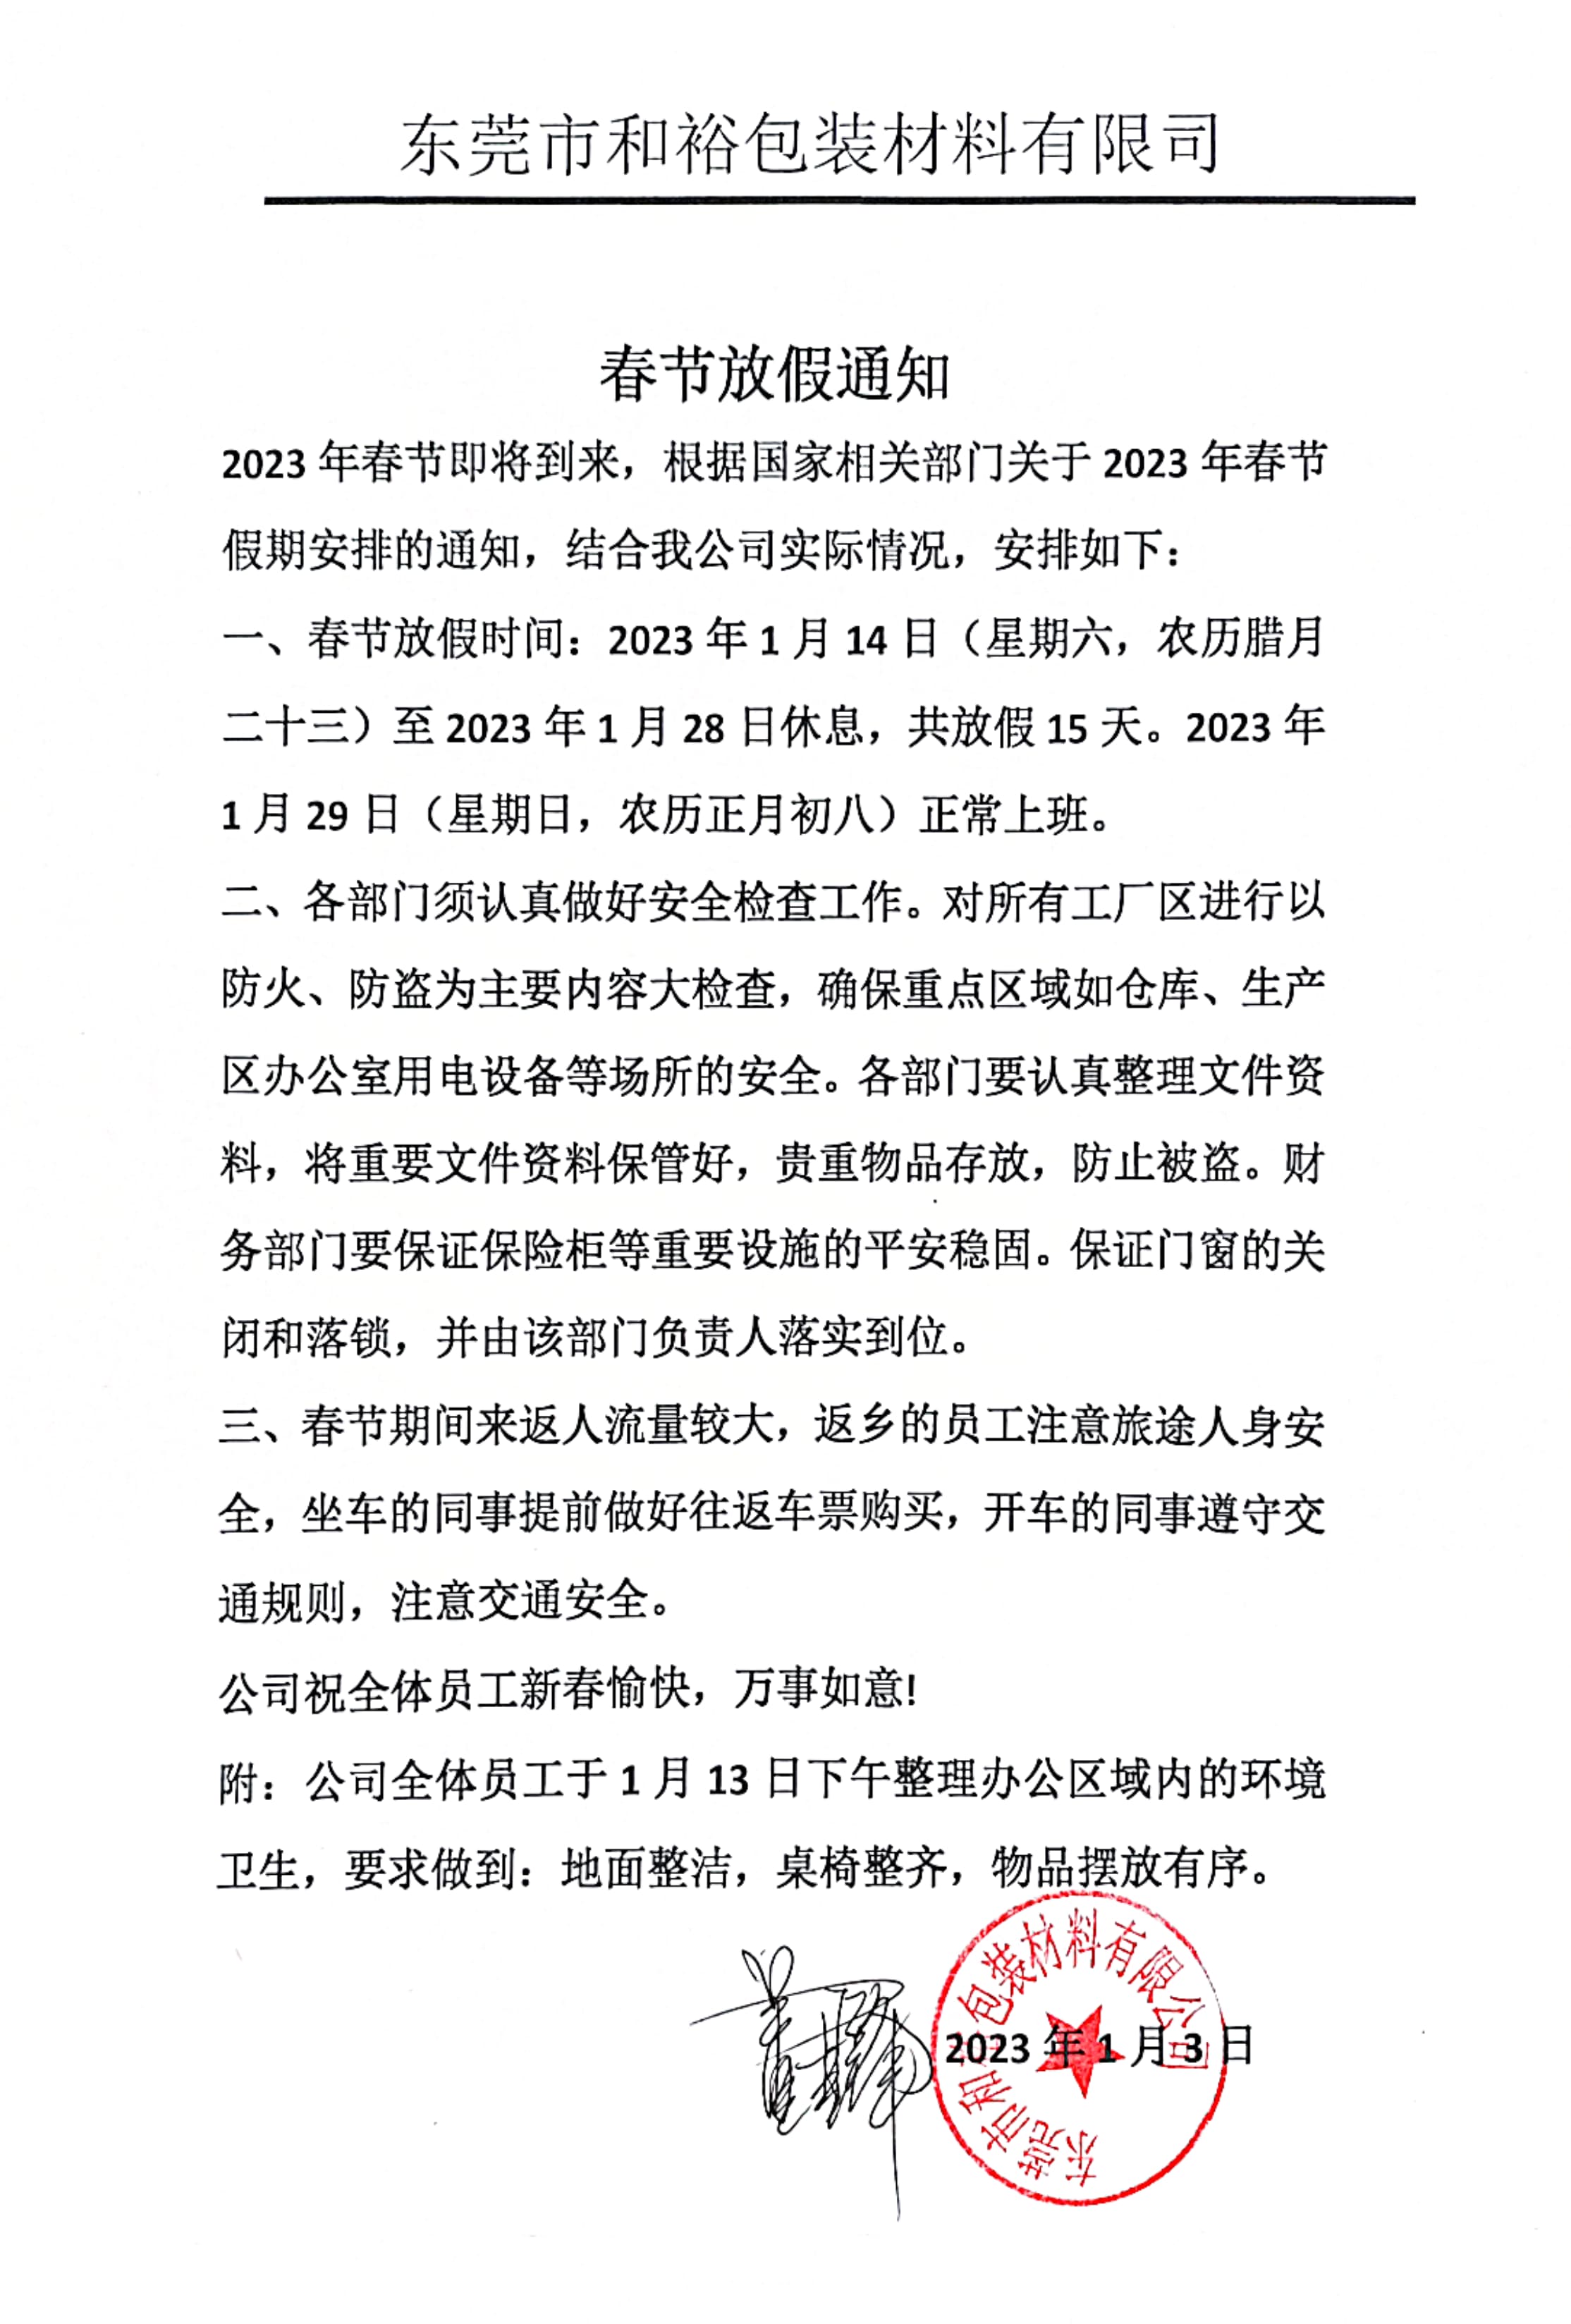 渭南市2023年和裕包装春节放假通知